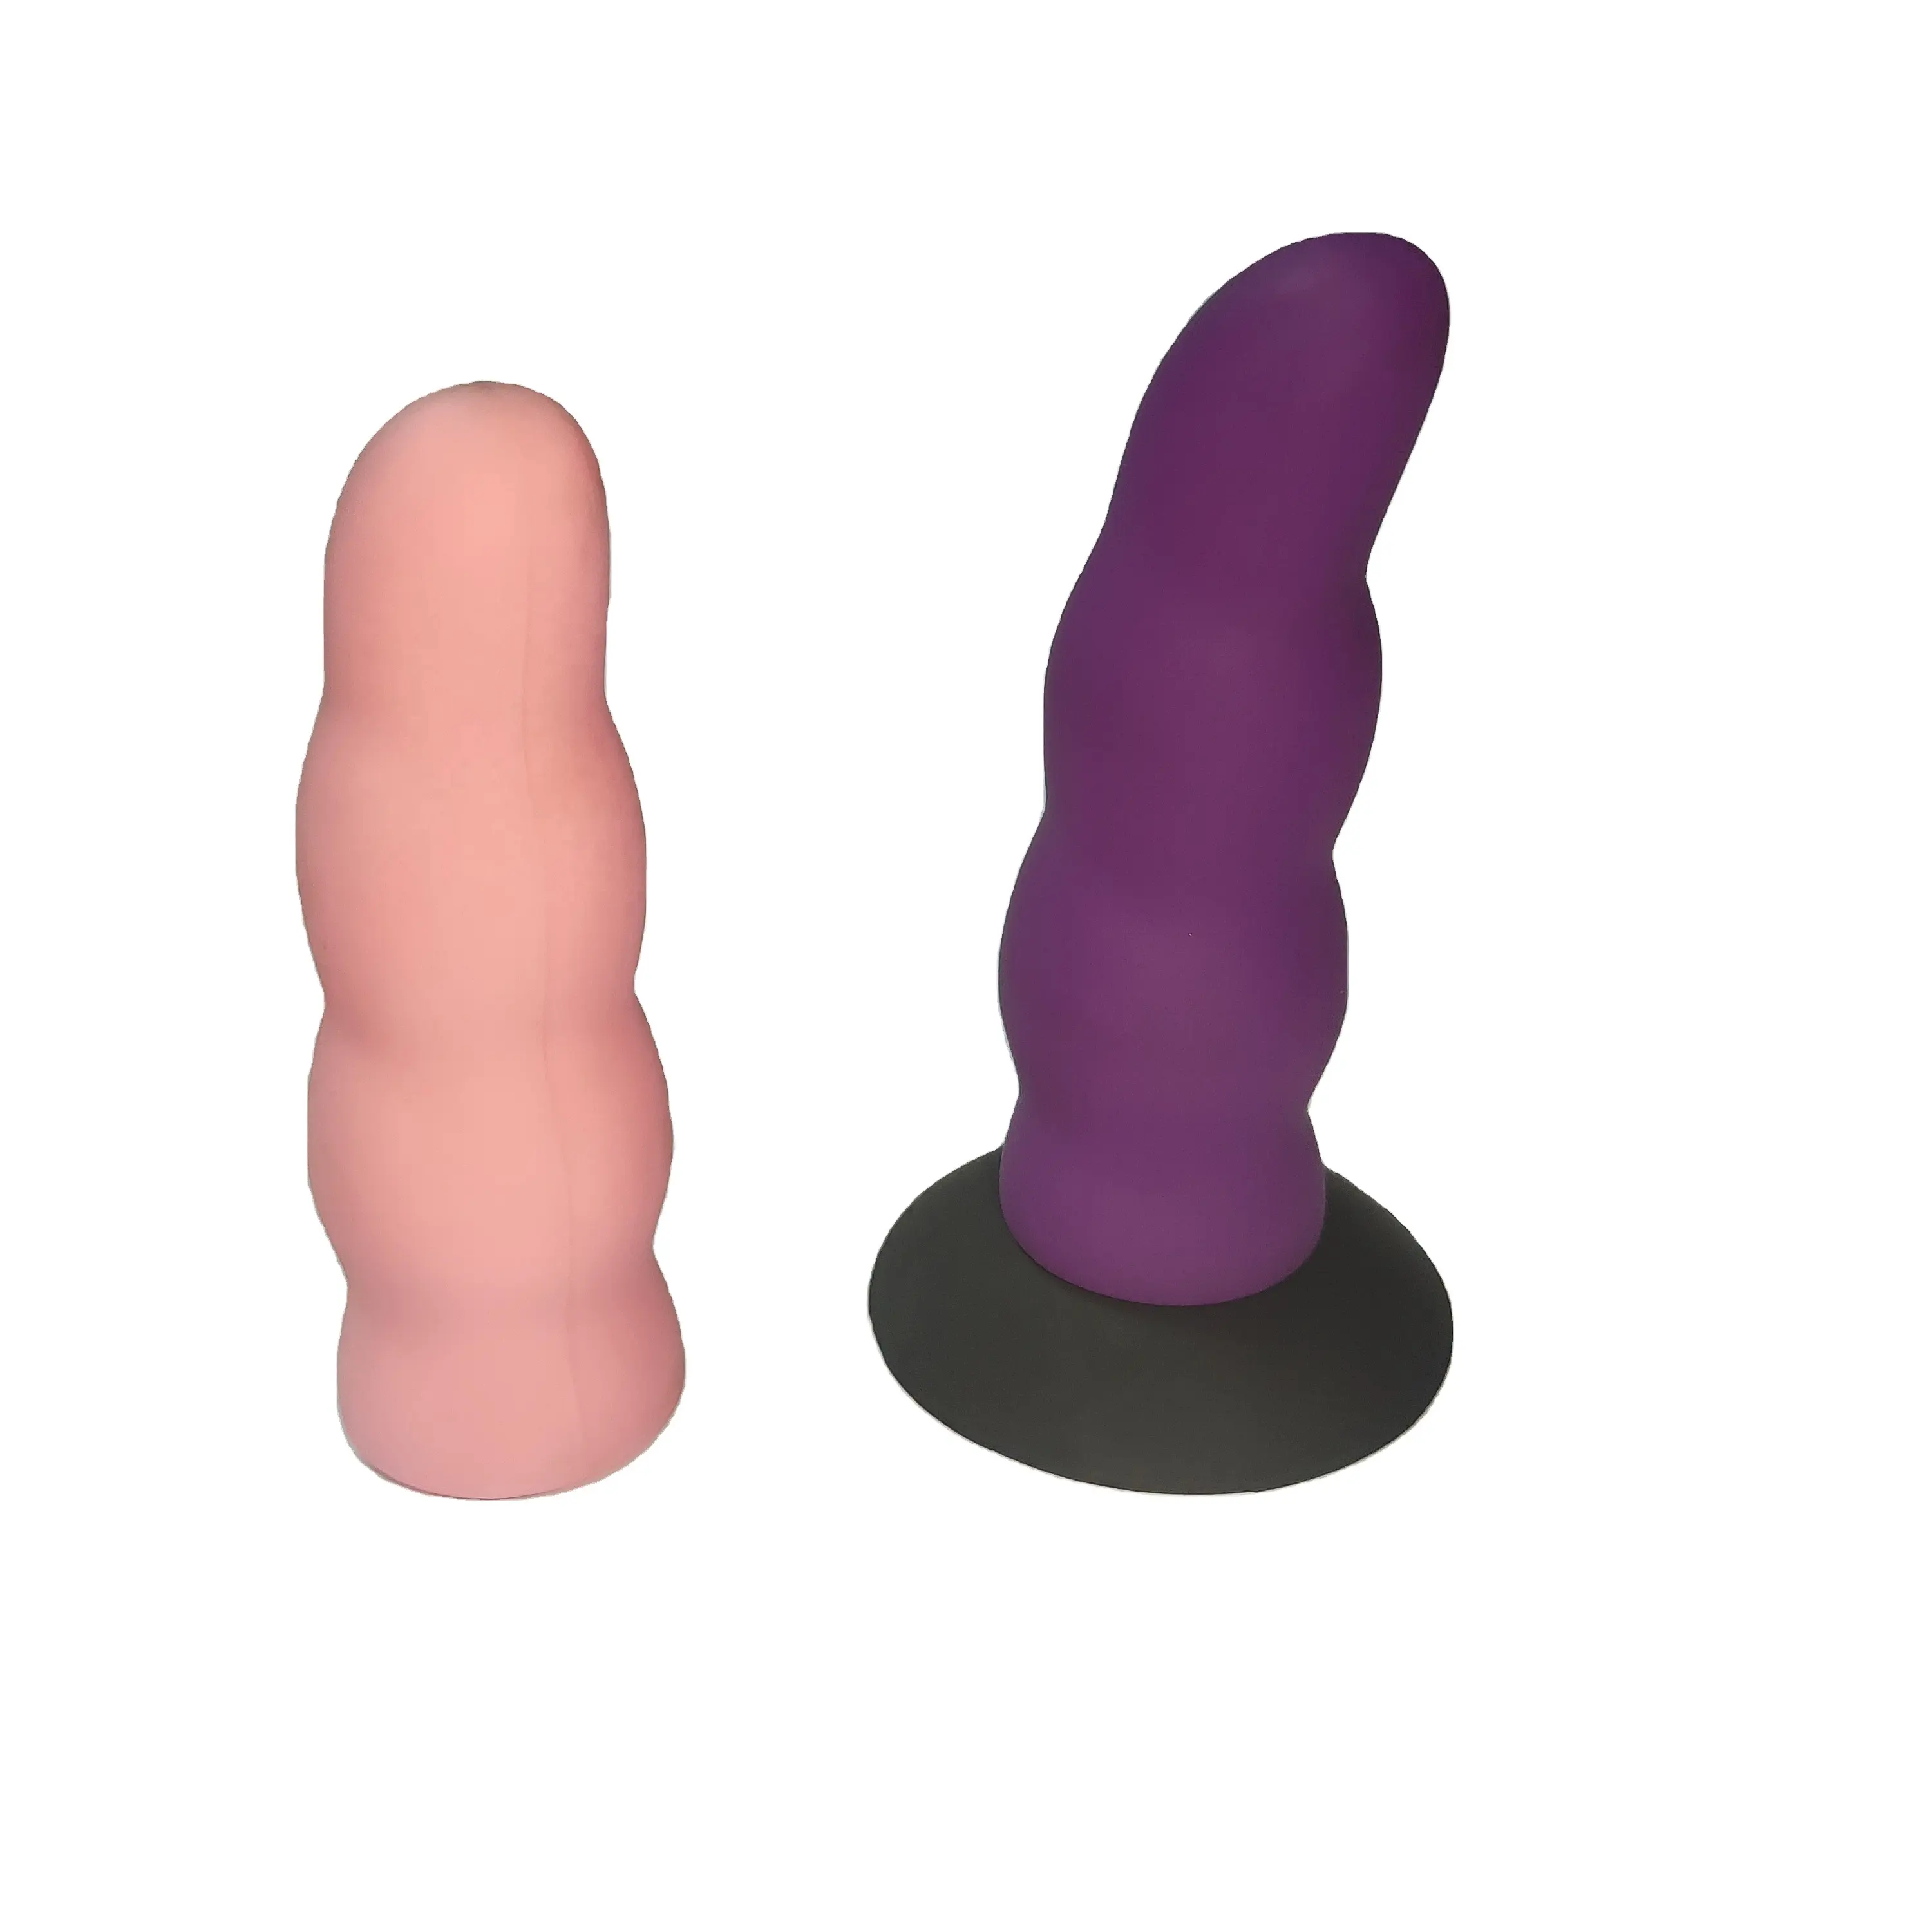 Grande dildo cinturino di controllo sul realistico grande dildo vibratore consoladores para mujer juguetes sessuales vibratore per le donne